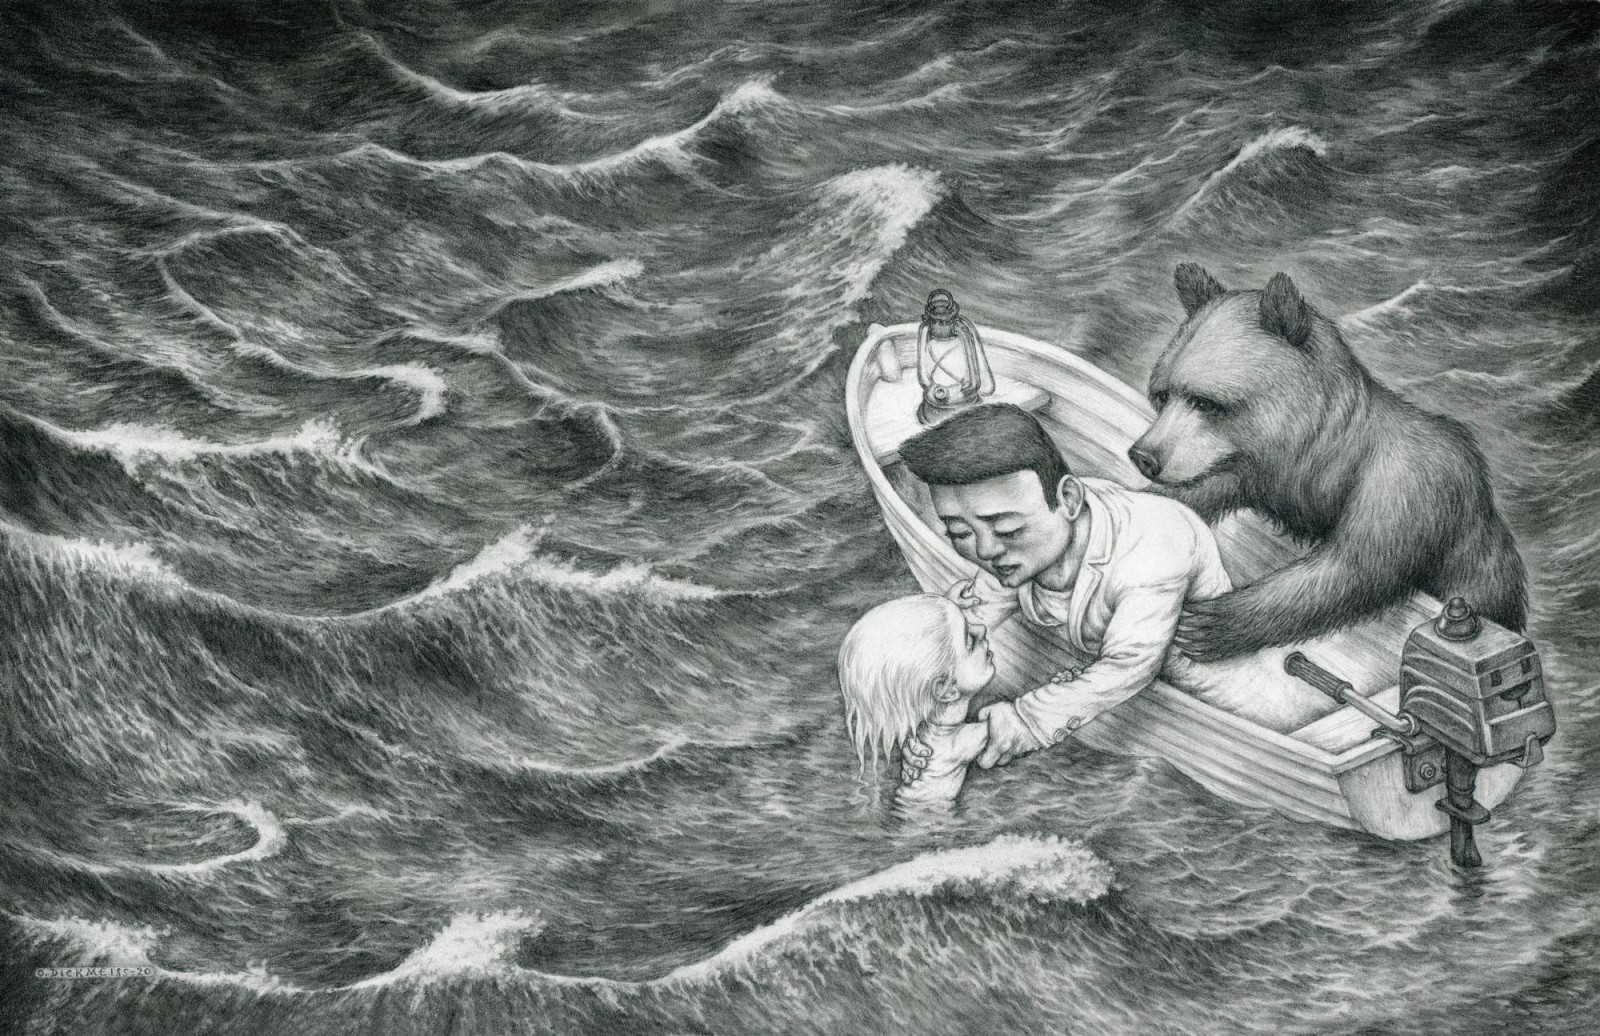 Forfatter Lilja Scherfig voksede op i et politisk hjem, hvor børn ikke måtte græde</br>Fra bogen `Dybt vand`</br>Foto: Illustration af Otto Dickmeiss